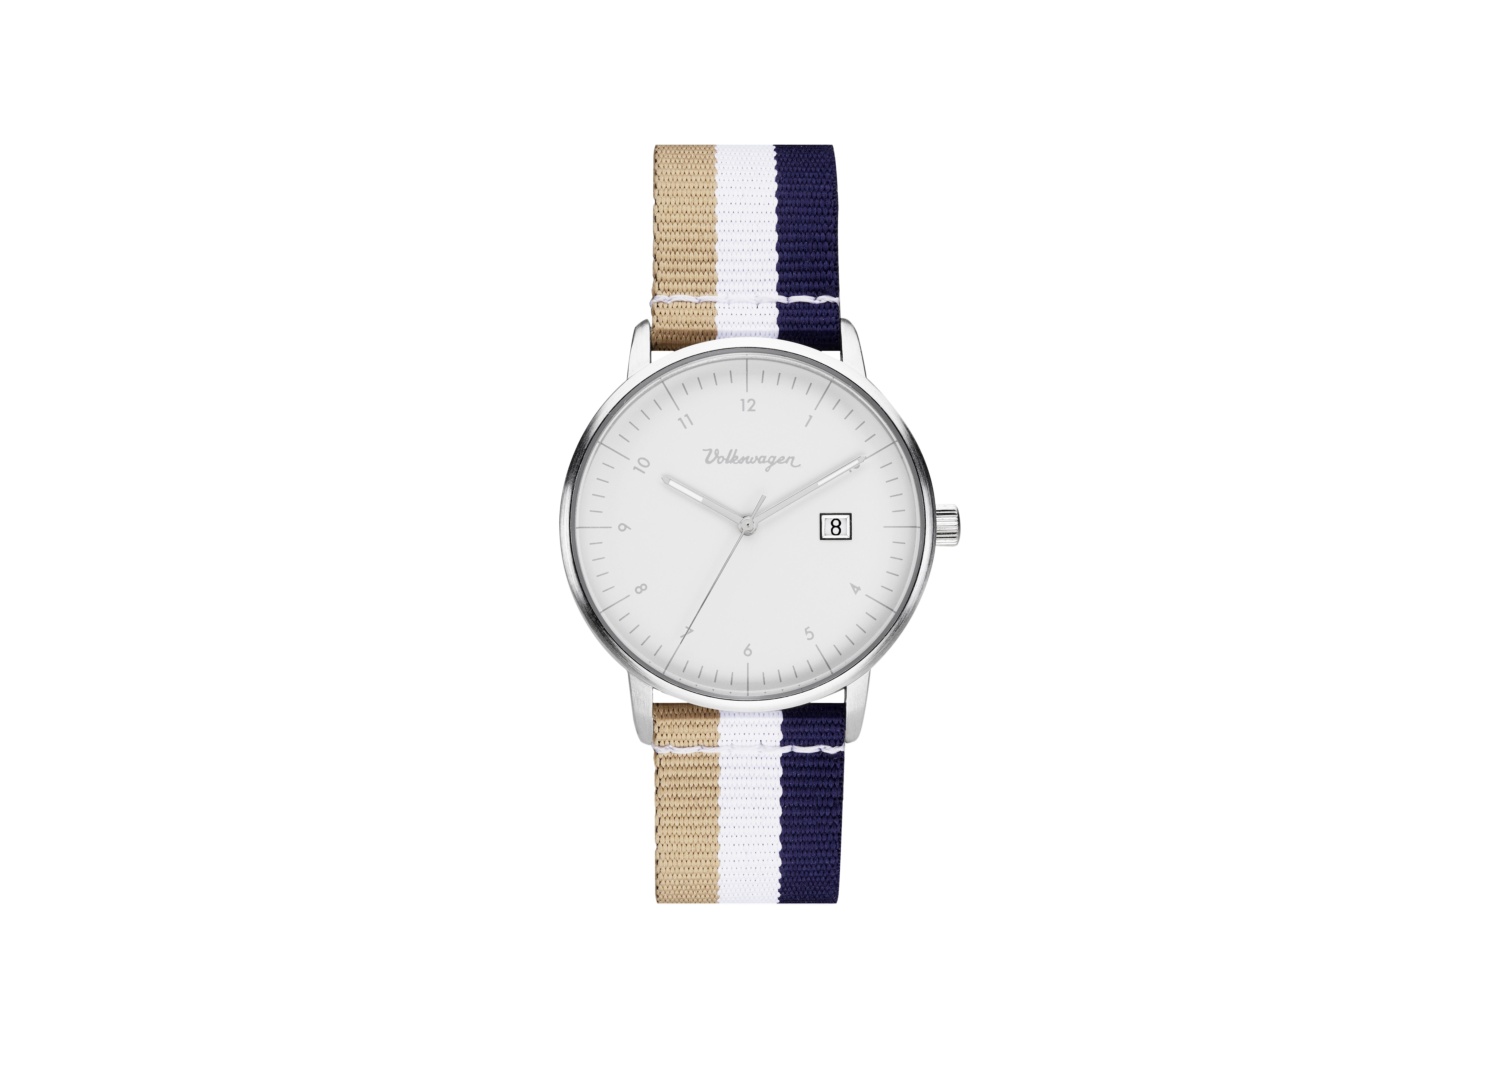 Reloj de pulsera unisex, diseño vintage